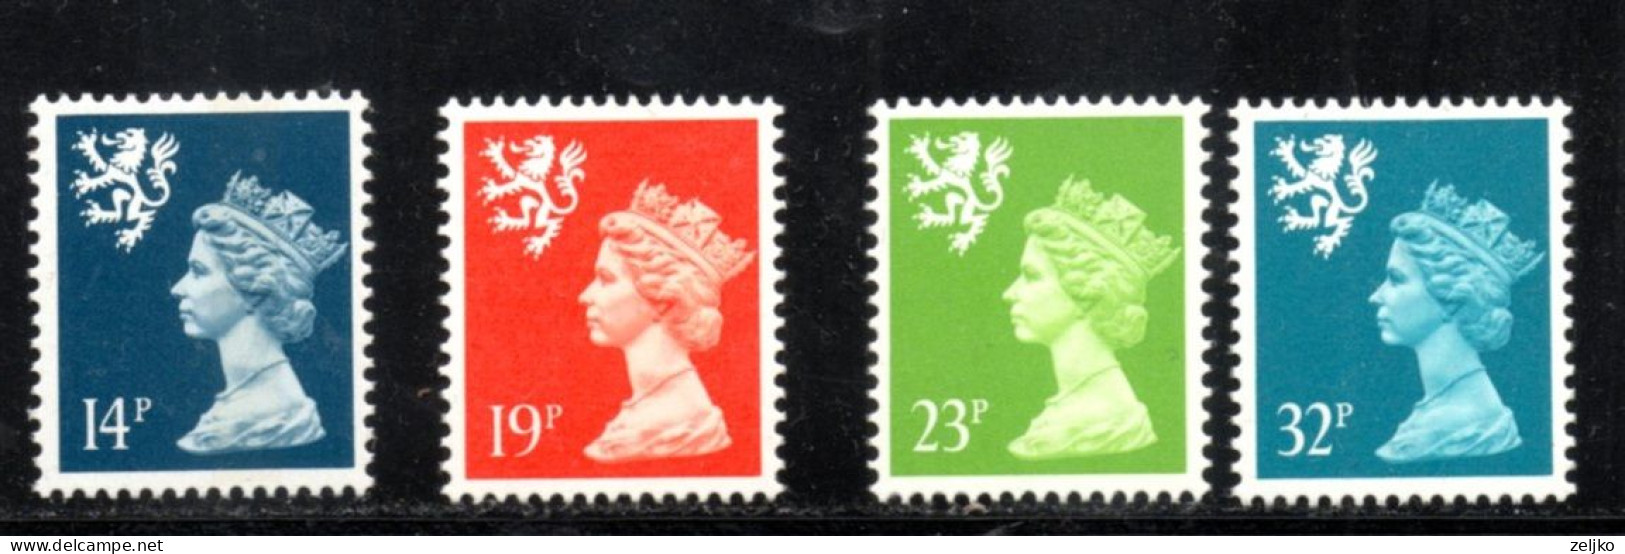 UK, GB, Great Britain, Regional Issue, Scotland, MNH, 1988, Michel 49 - 52, Queen Elizabeth - Schottland